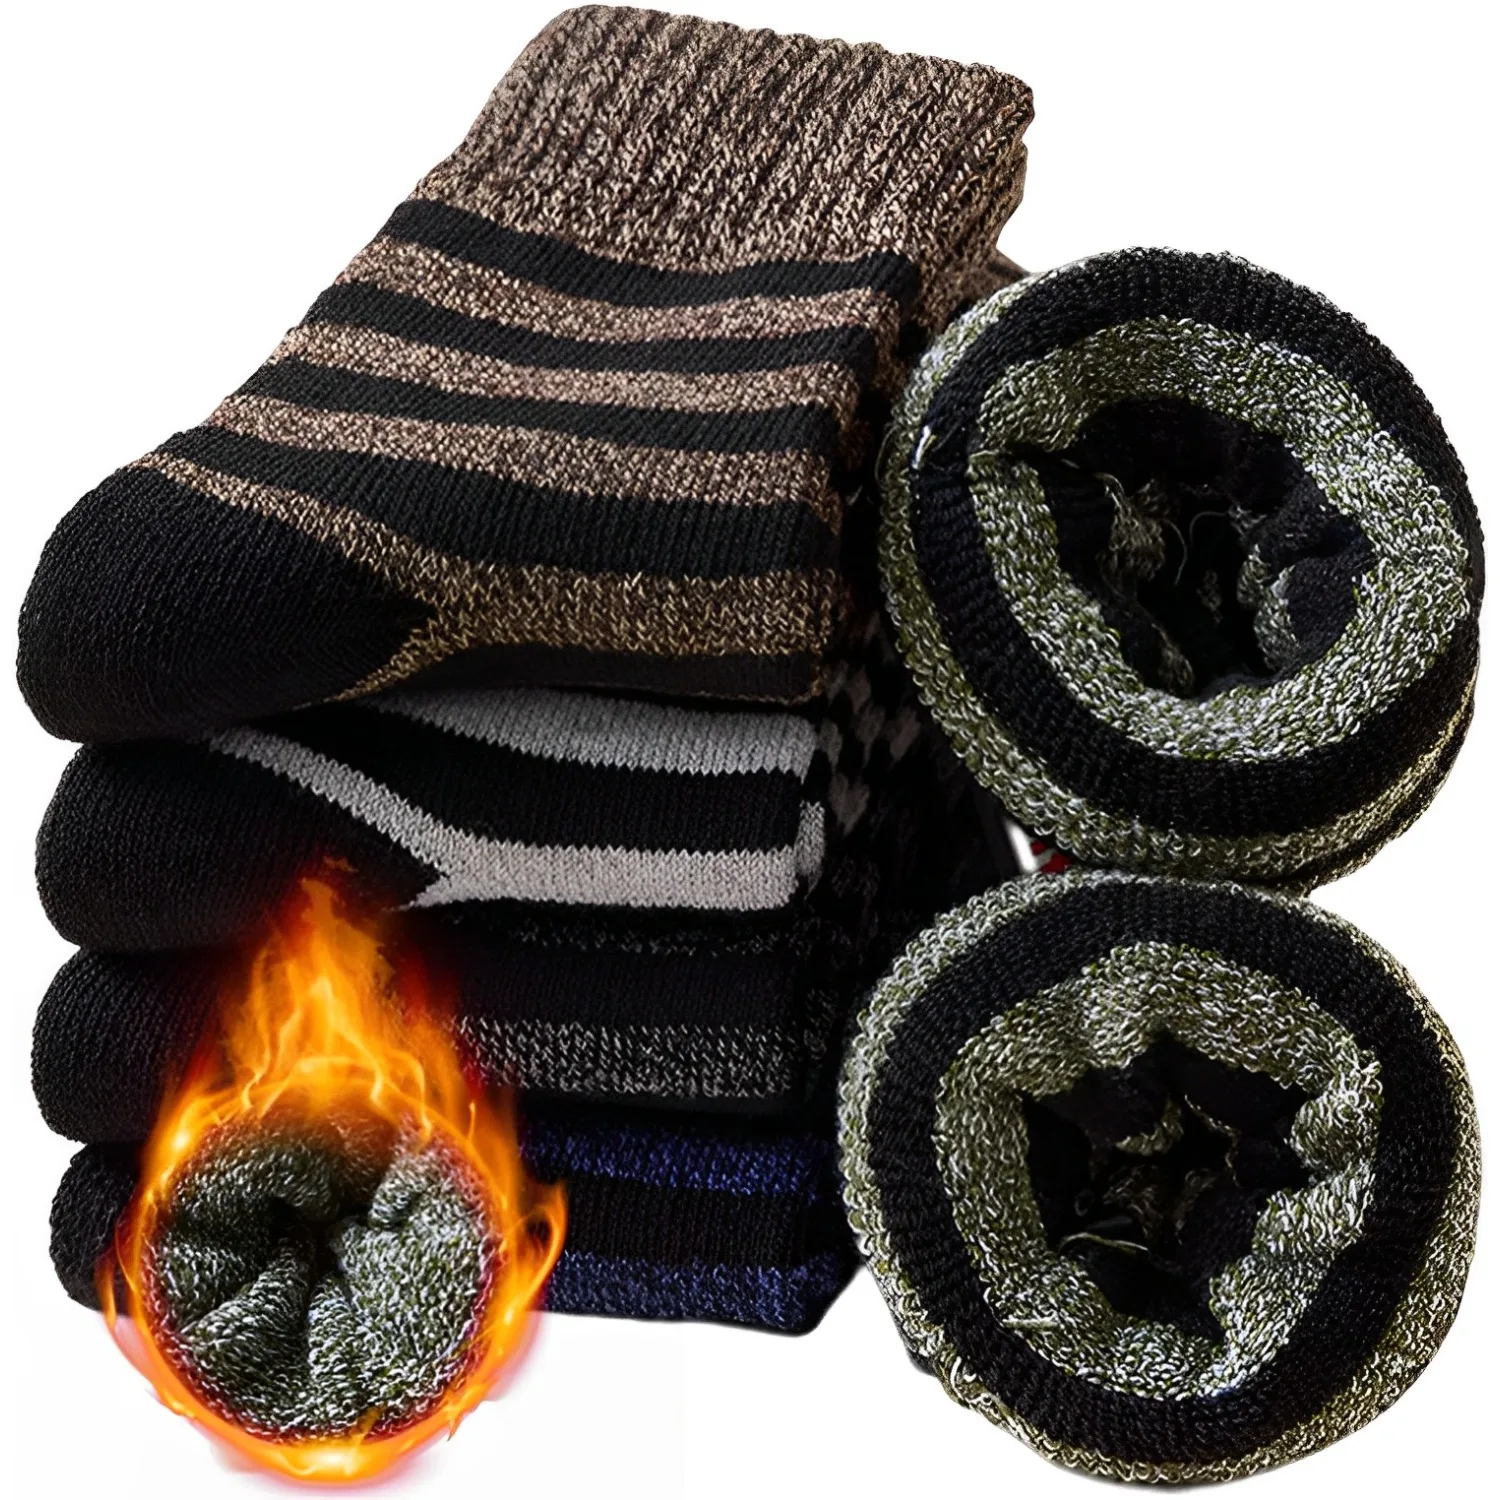 5Pairs חורף חם לעבות צמר מרינו גרביים נשים מגבת להתחמם בחורף גרבי כותנה נגד שלג קר רוסיה גרביים לגבר